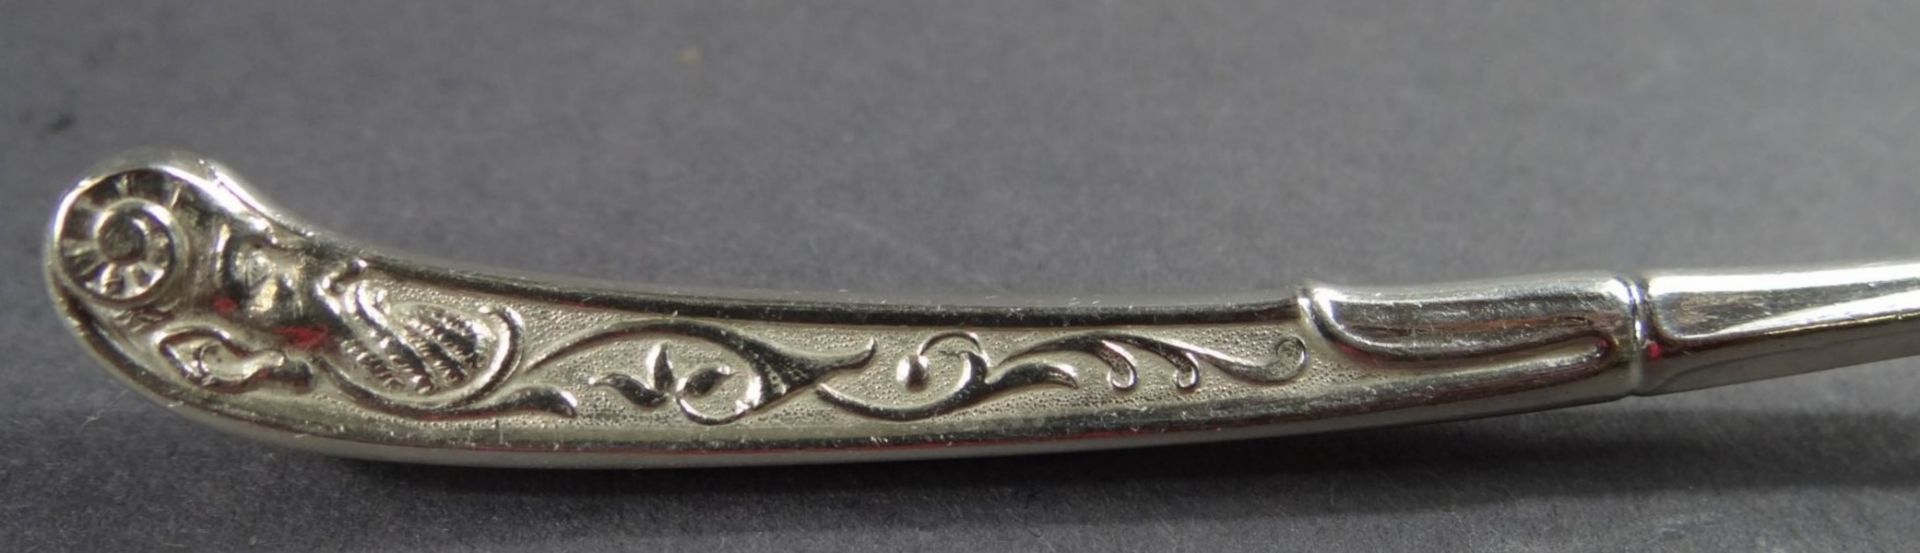 Zierlöffel, Silber, Copenhagen, div. Punzen, Griffende mit Ziermonogramm, L-17 cm, 59 gr. - Bild 3 aus 5